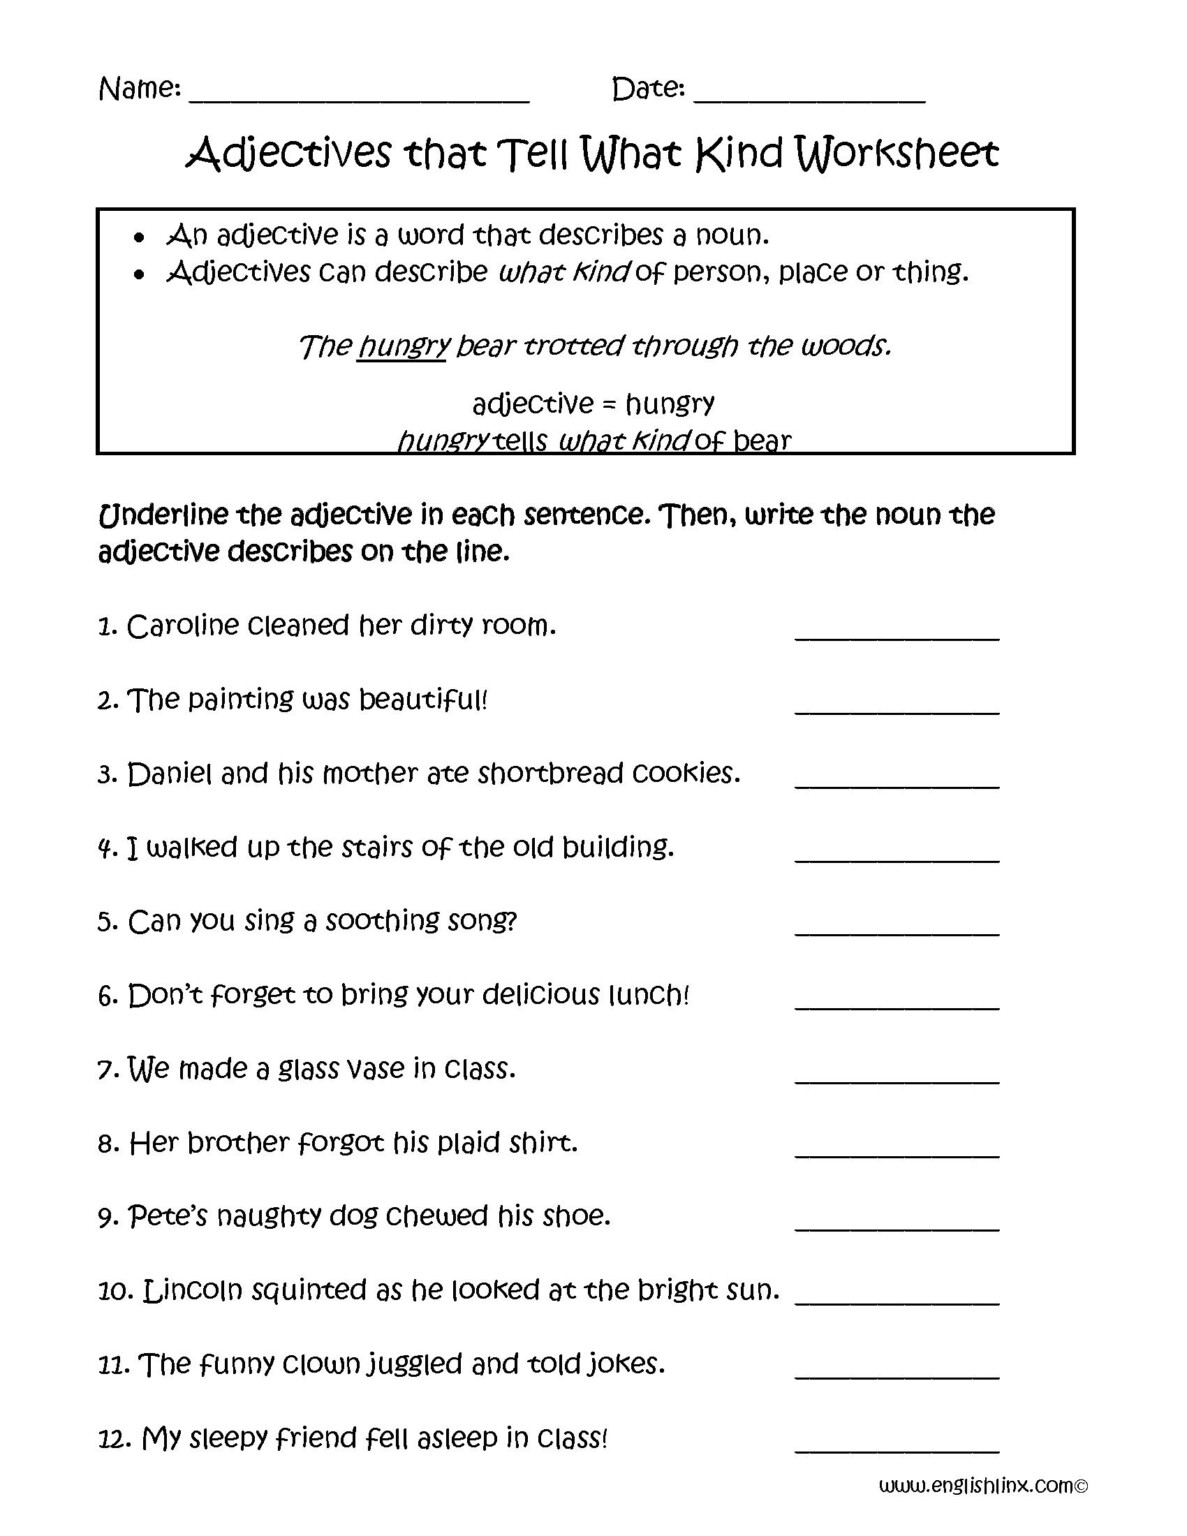 Adjectives Worksheets For Grade 4 Adjectiveworksheets